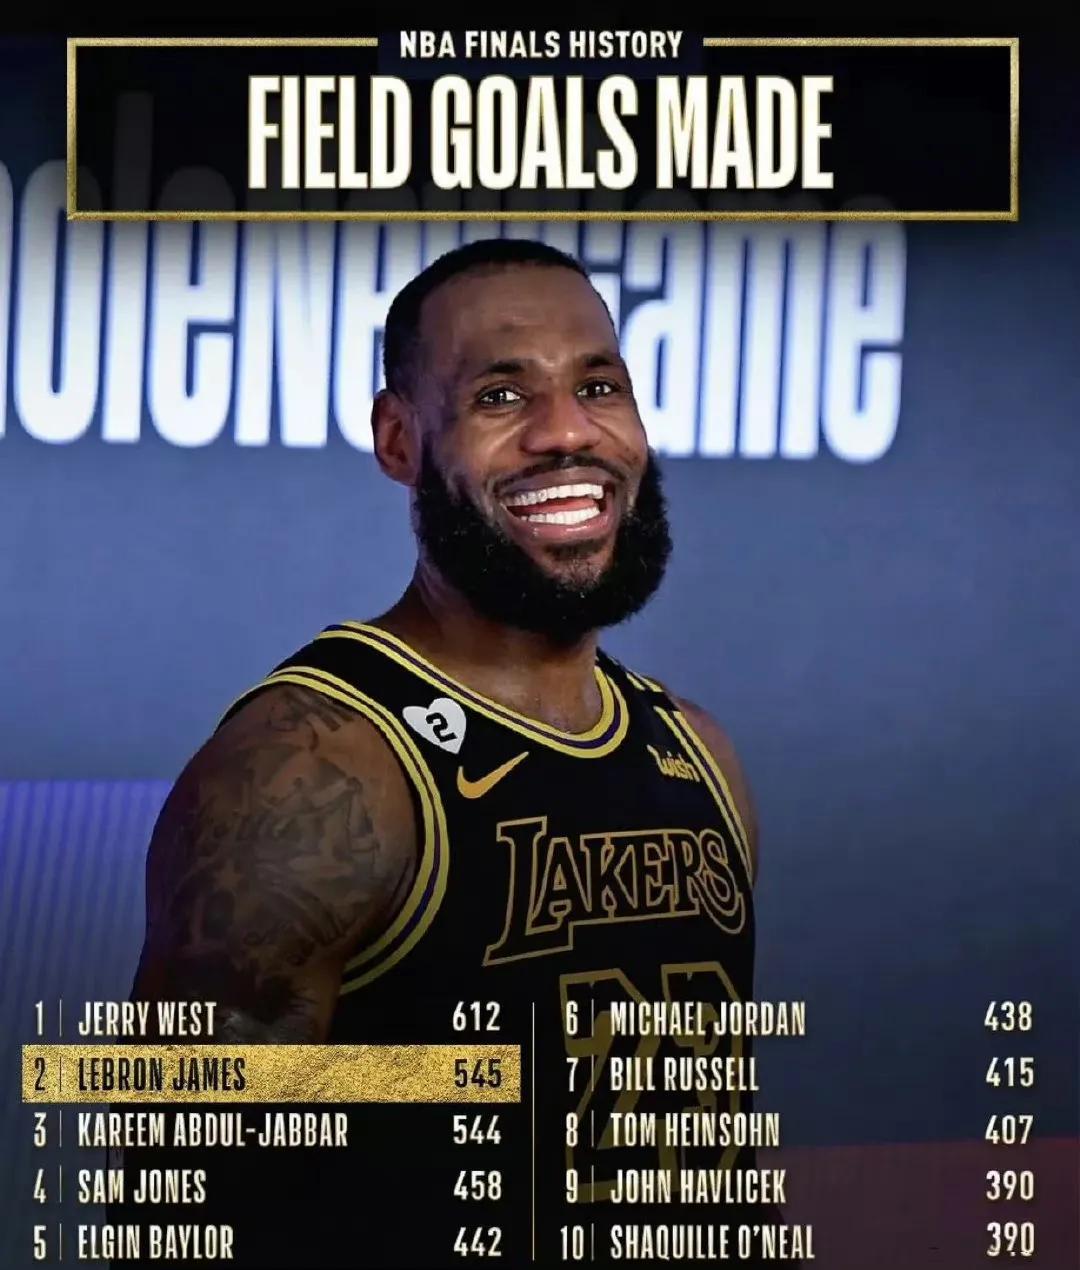 美媒发布NBA历史总决赛投篮命中次数排行榜：
詹姆斯比乔丹还猛！高居第二！

具(1)